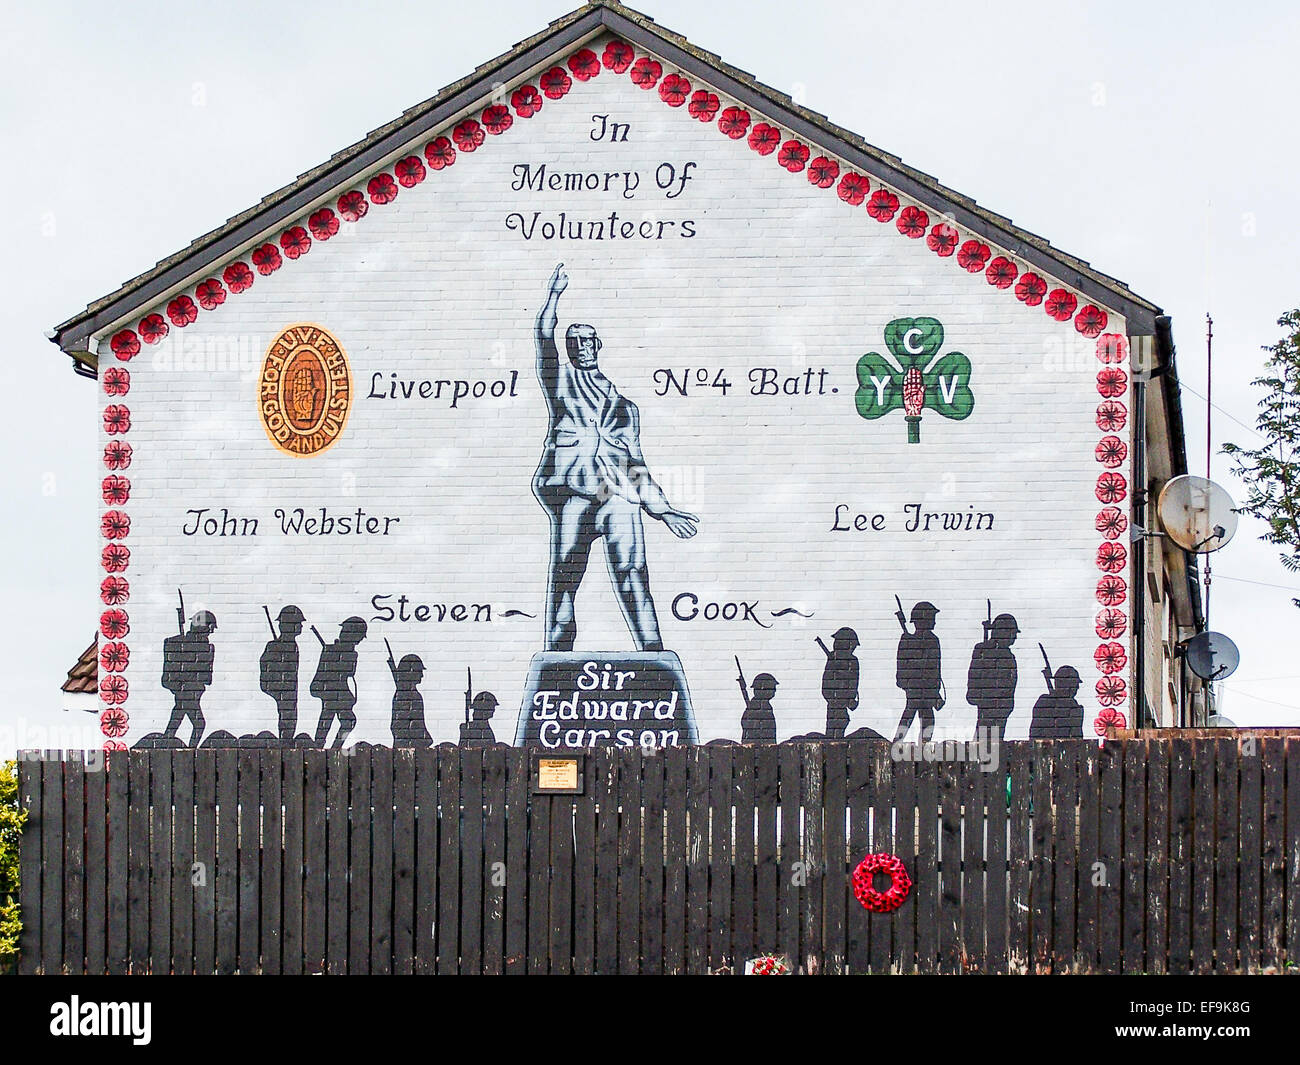 Murale su una veletta in Belfast commemorando UVF volontari da Liverpool. Foto Stock